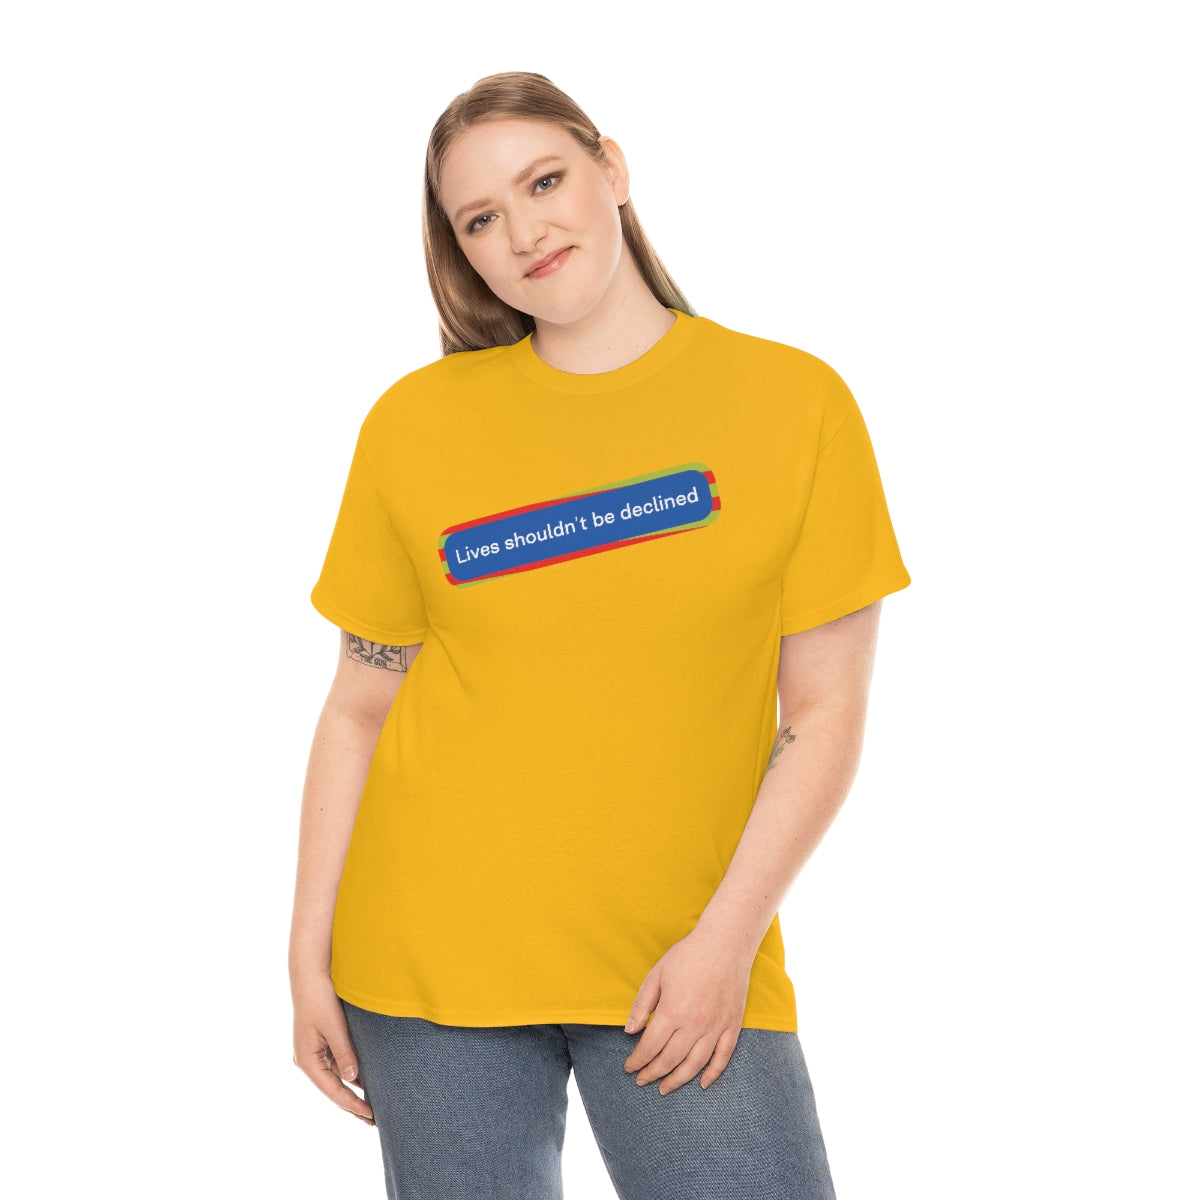 Leben sollten nicht abgelehnt werden - Unisex-T-Shirt